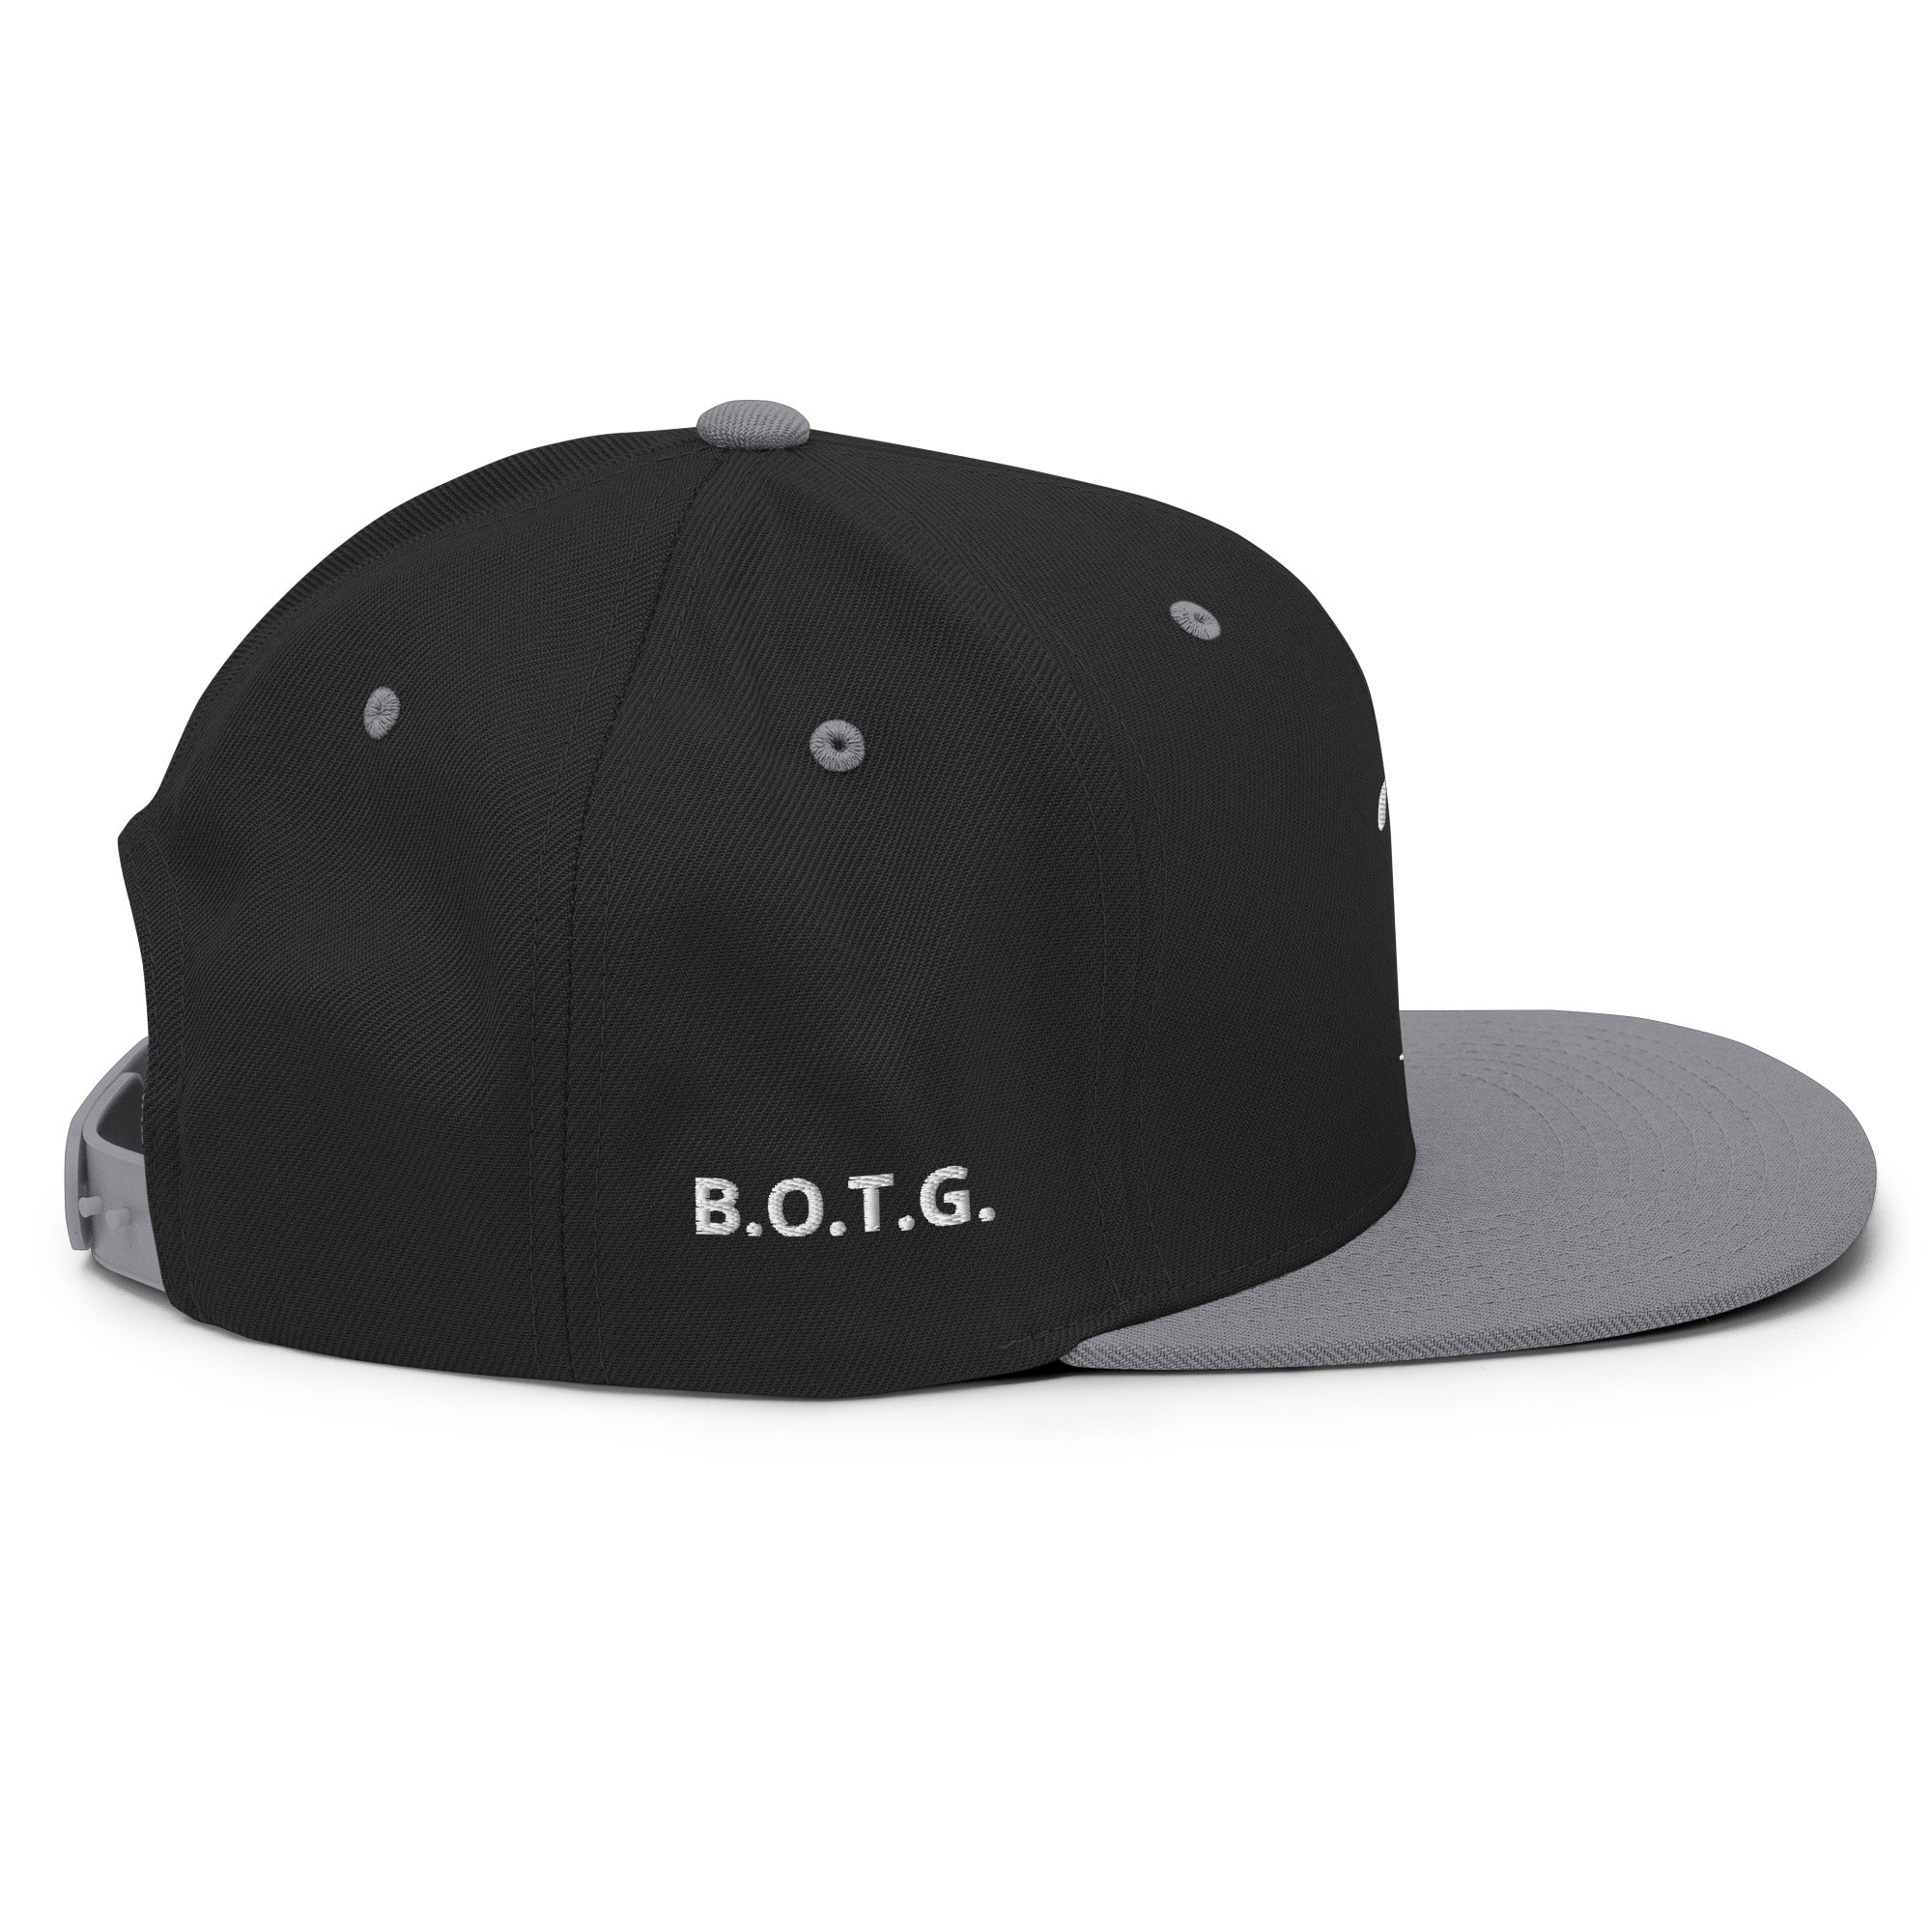 B.O.T.G. Tall Snapback Hat